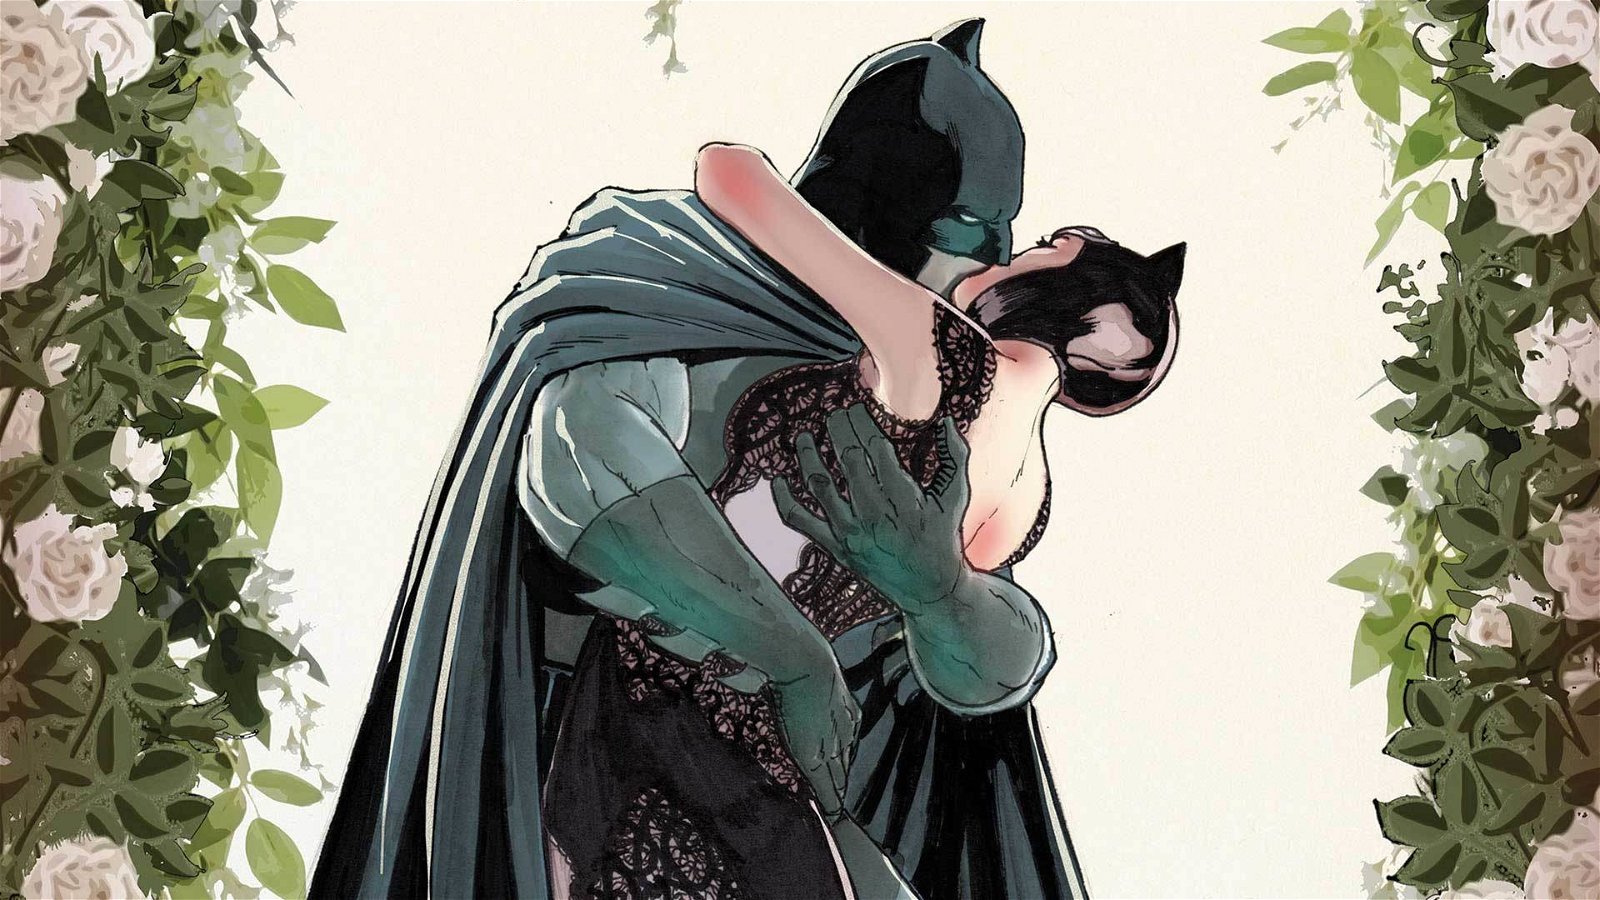 Immagine di Batman verrà stravolto: così dice Tom King